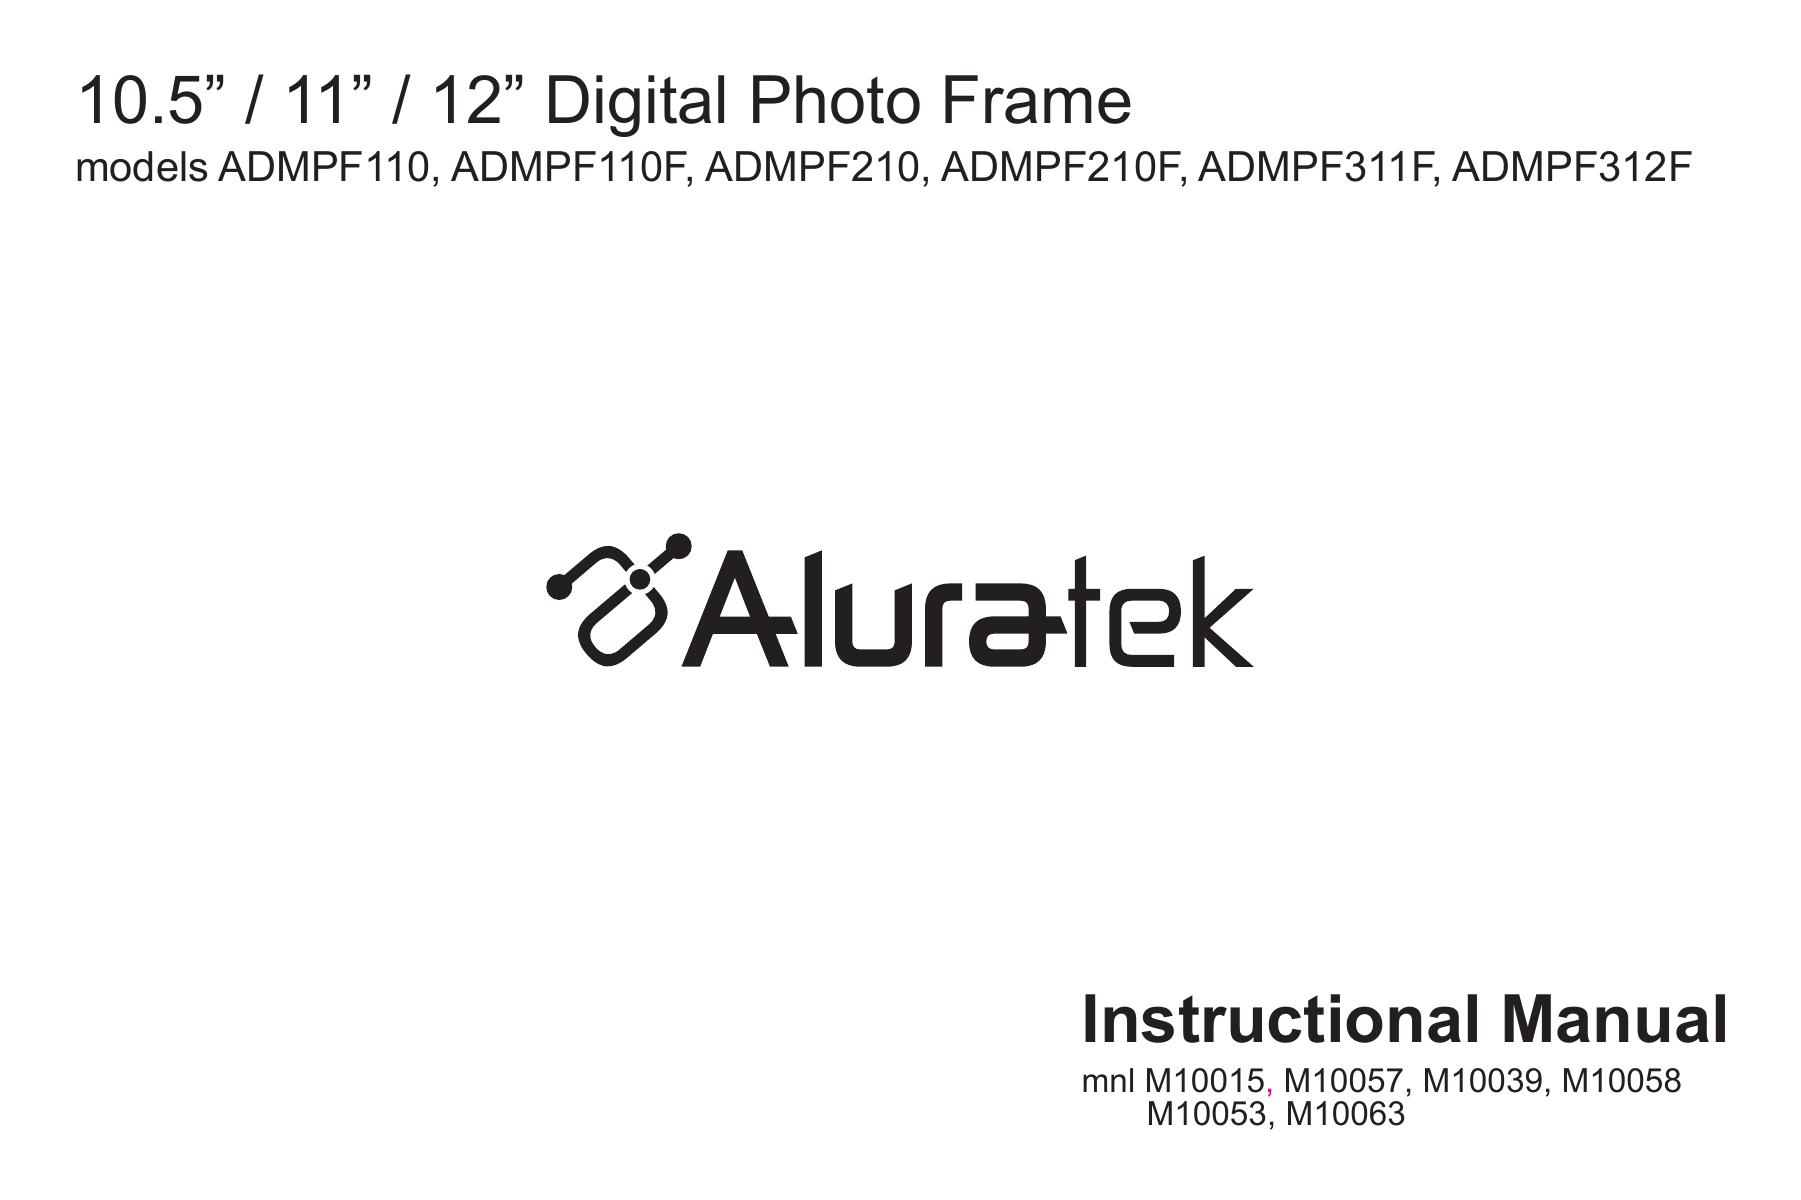 Aluratek M10063 Digital Photo Frame User Manual